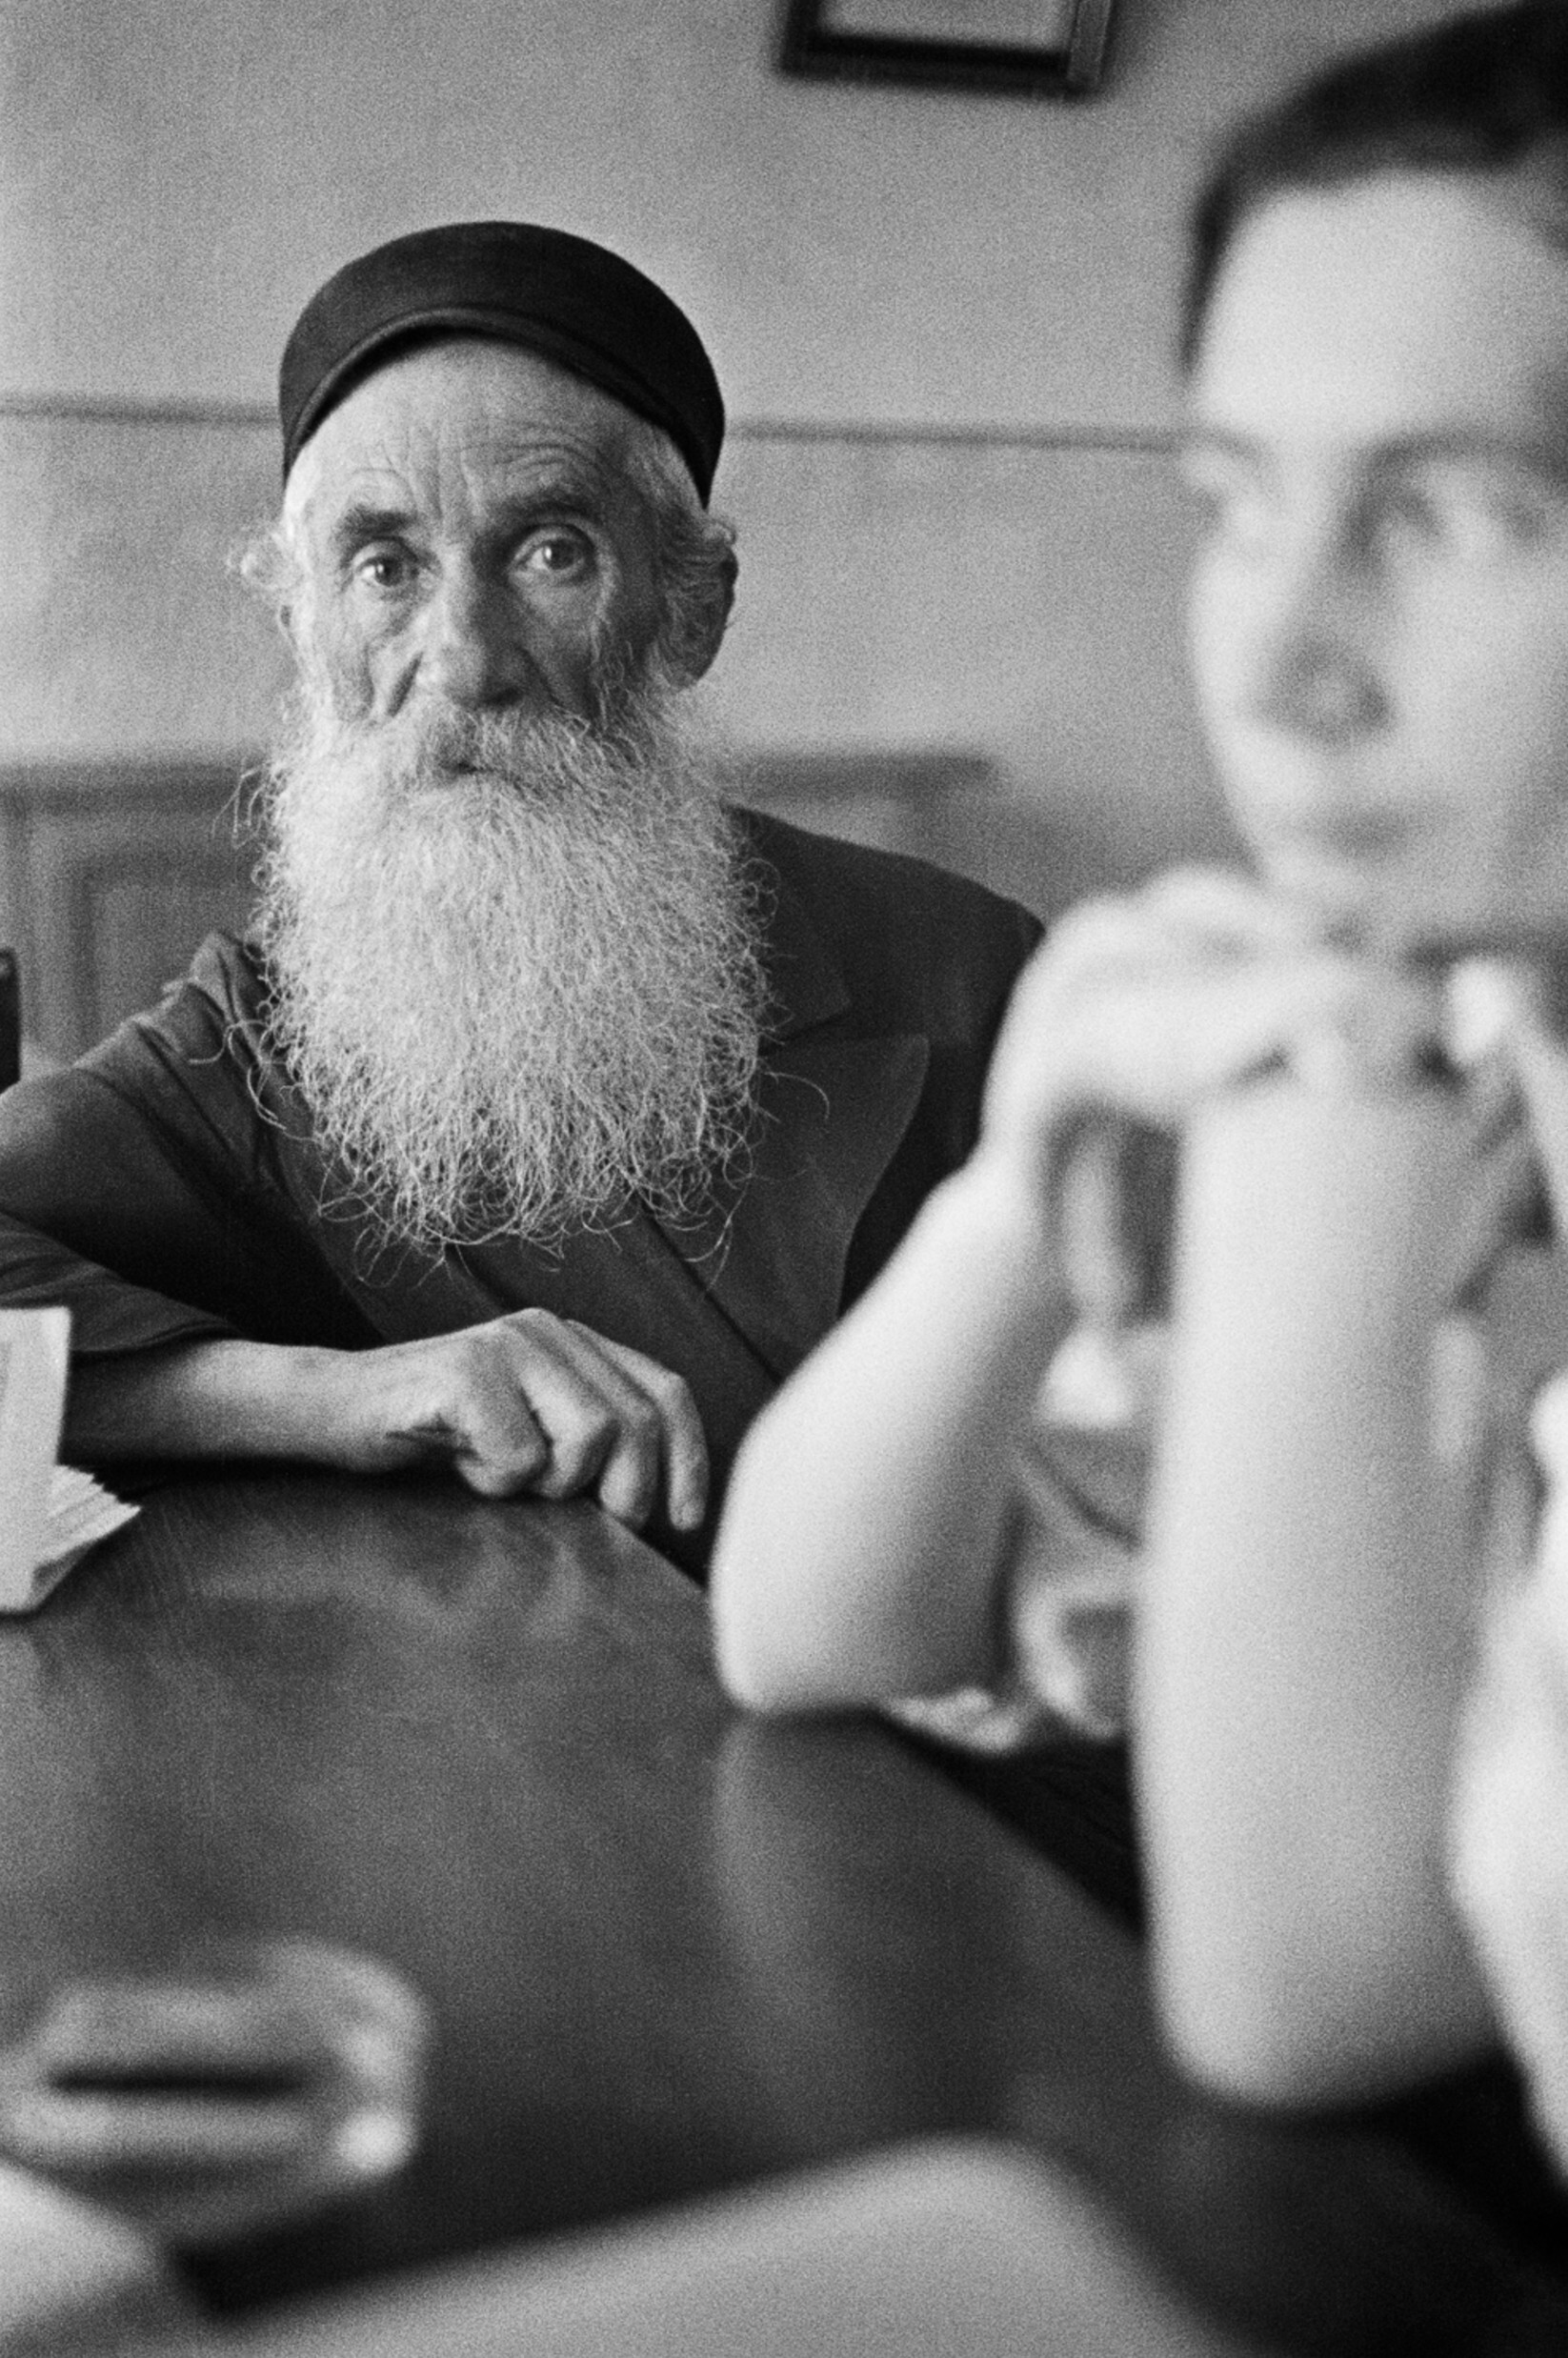 В ожидании обслуживания, Ласк или Лодзь, ок. 1935-38 гг. Фотограф Роман Вишняк